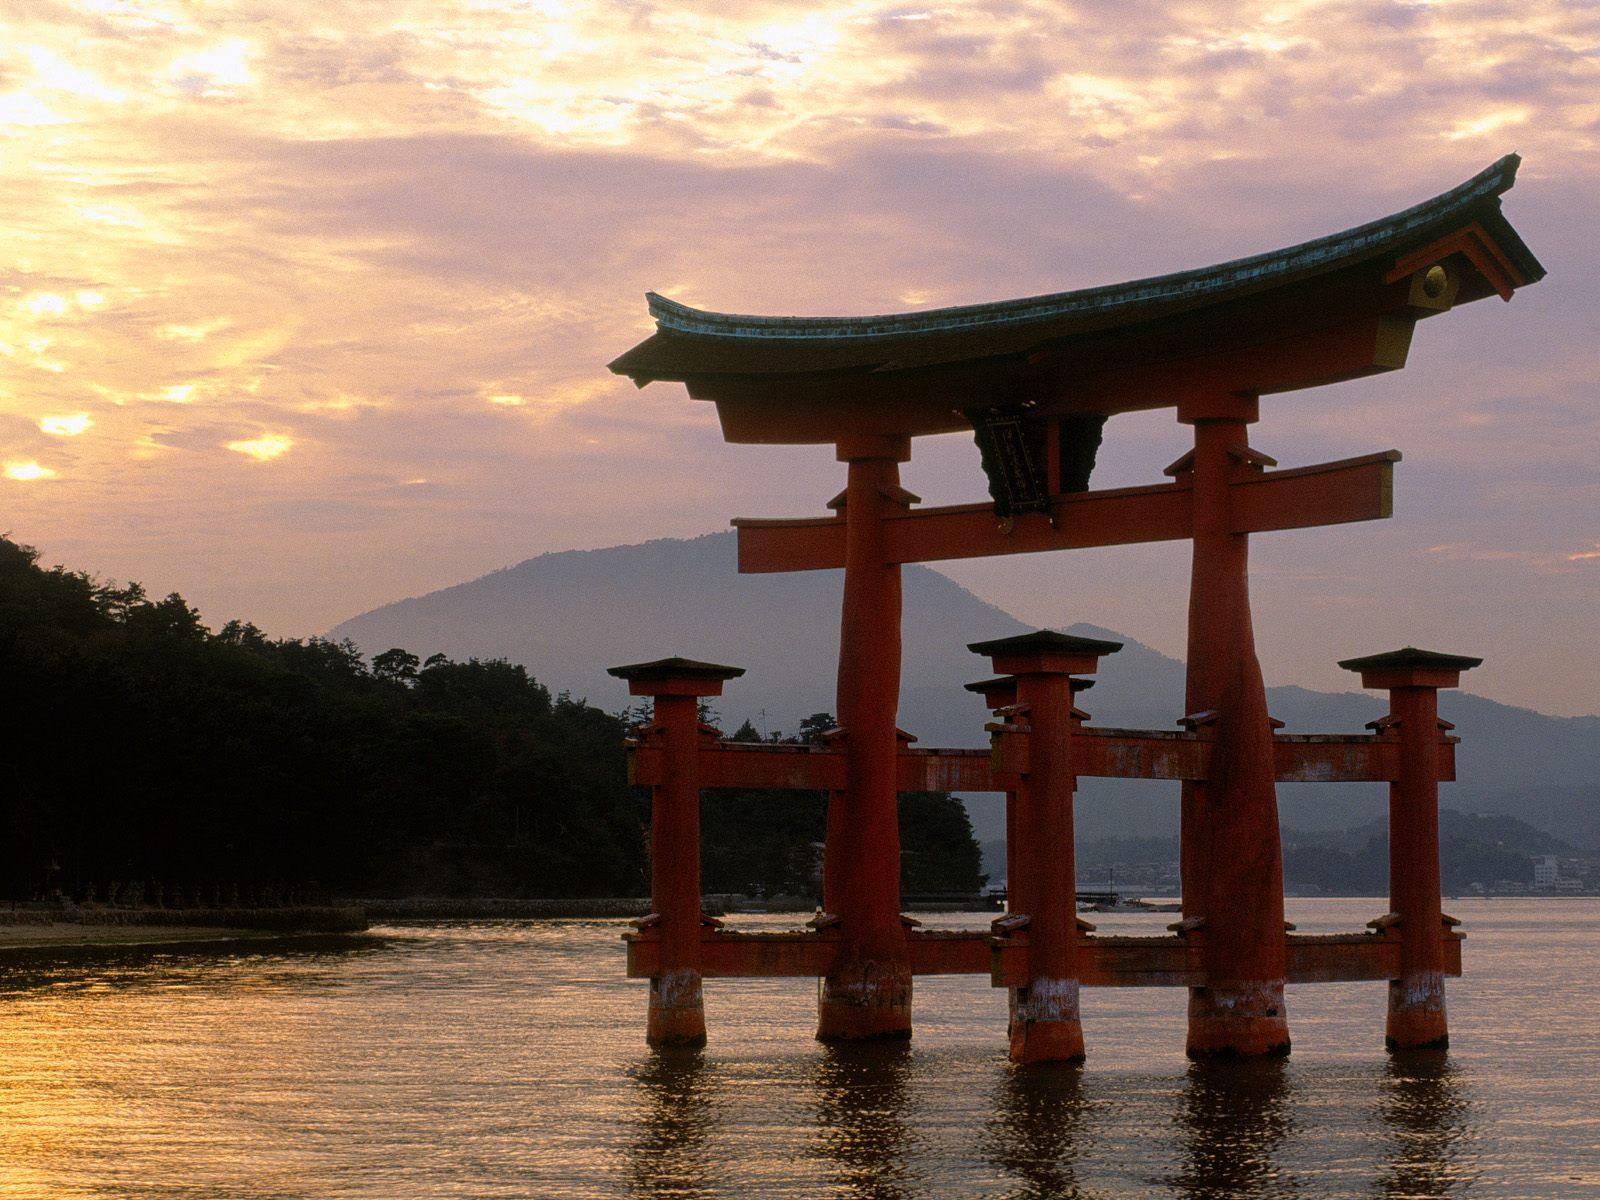 Sunset at beach Japan free desktop background wallpaper image